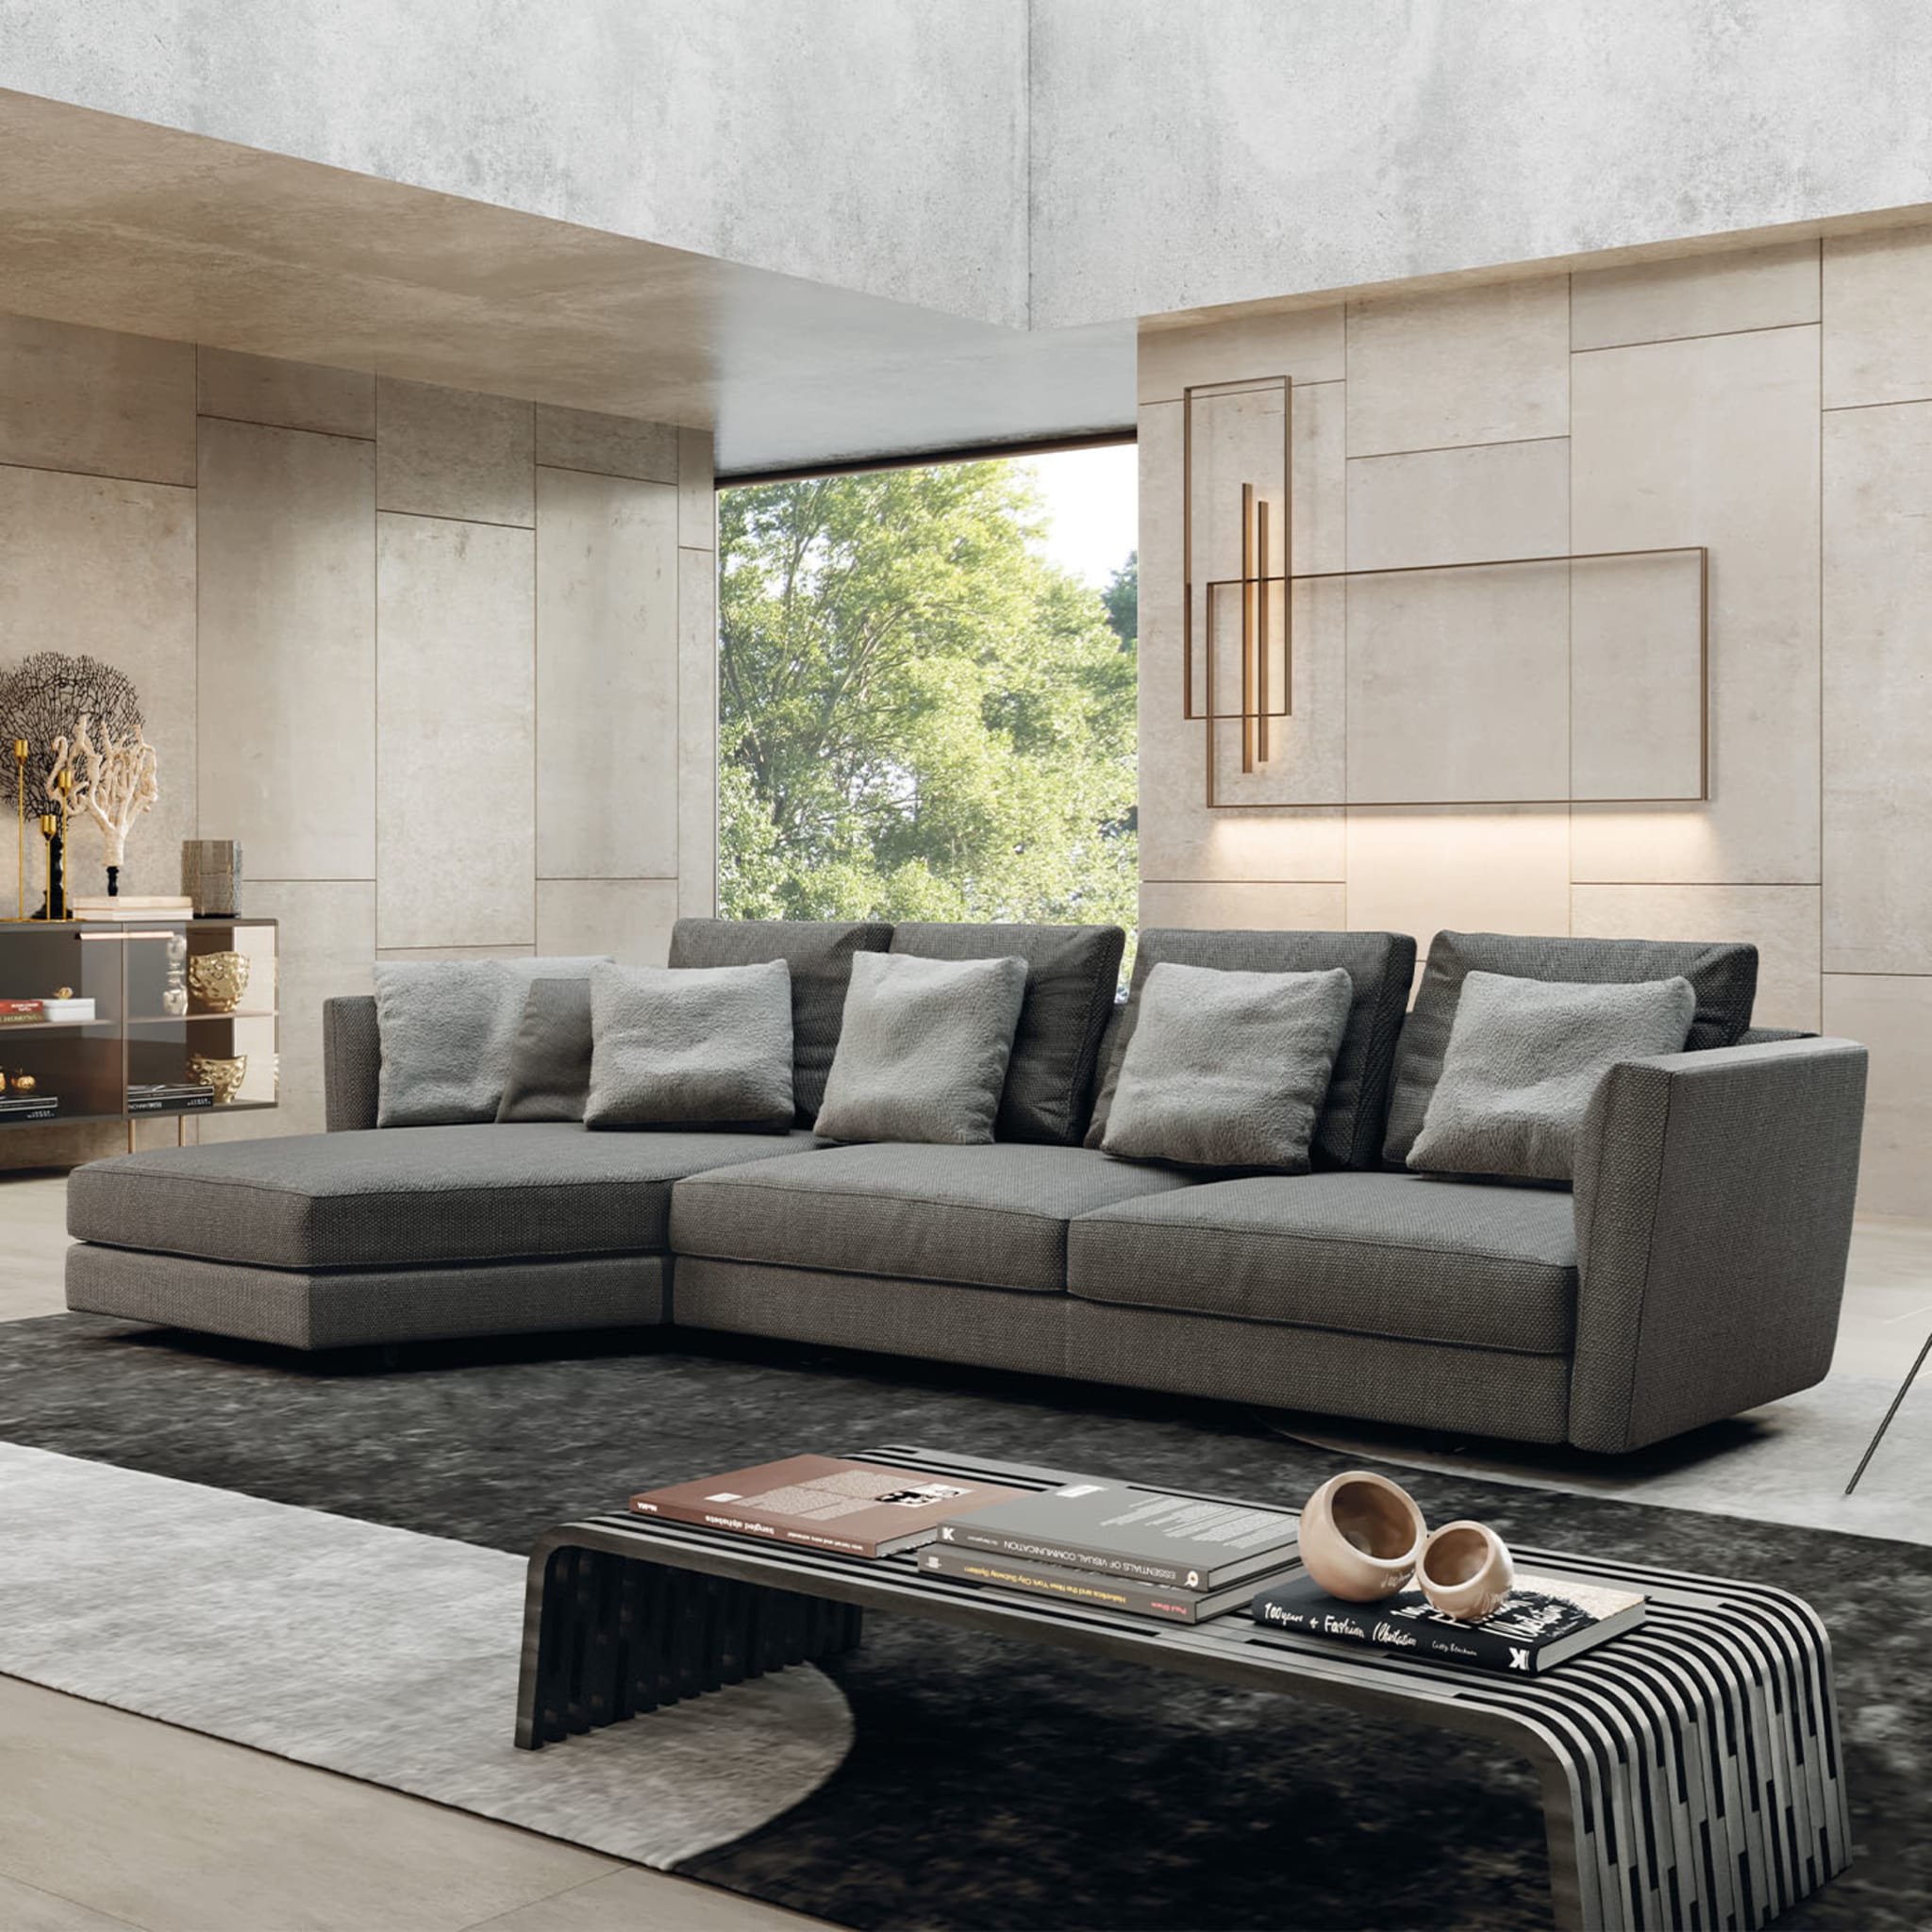 Ester Large Modular Sofa by Norberto Delfinetti - Vue alternative 1